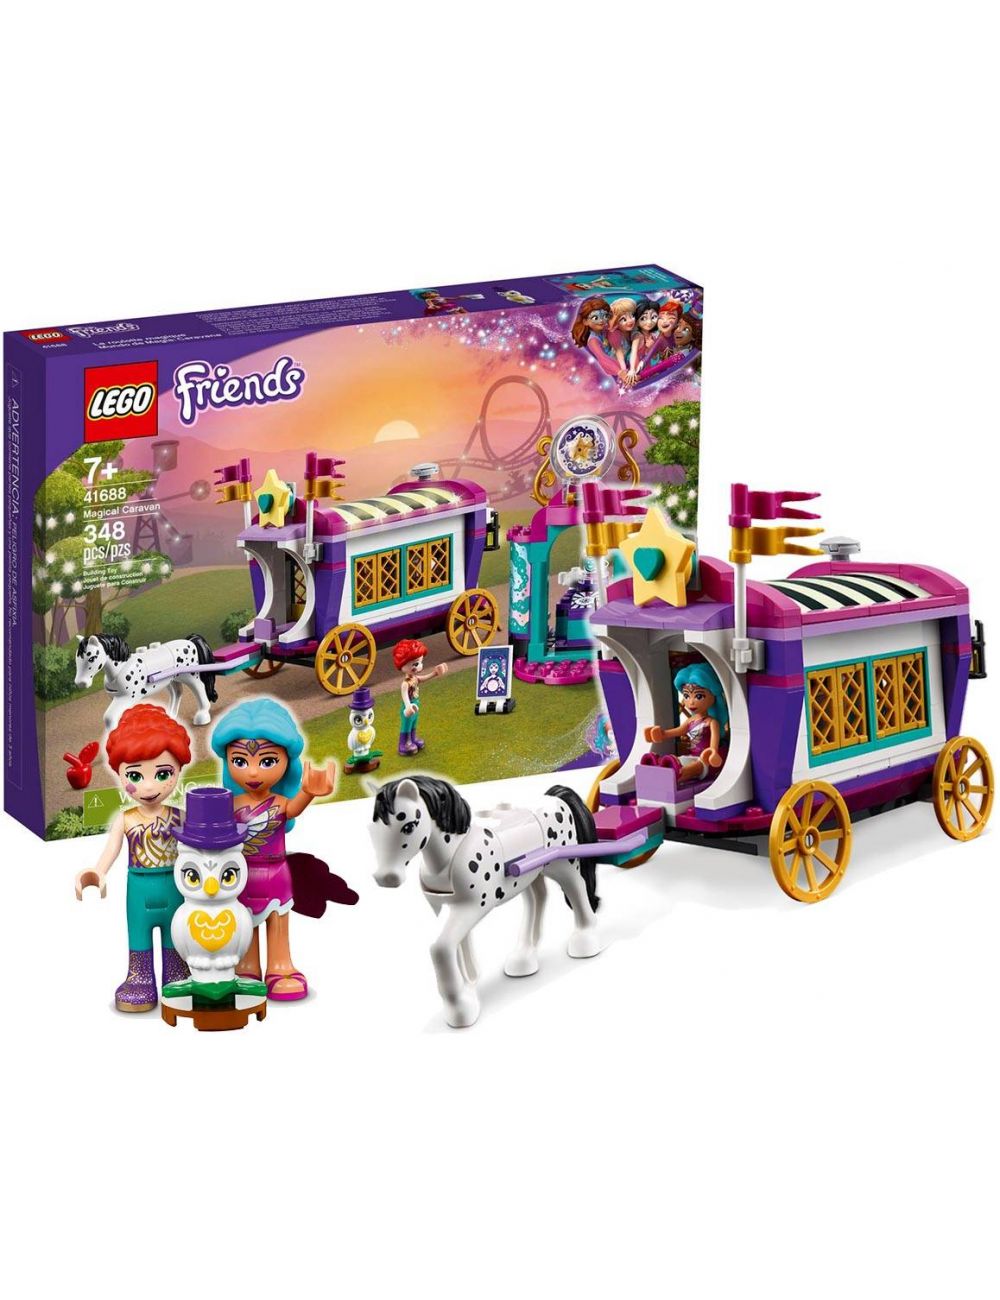 LEGO Friends Magiczny Wóz Klocki 41688